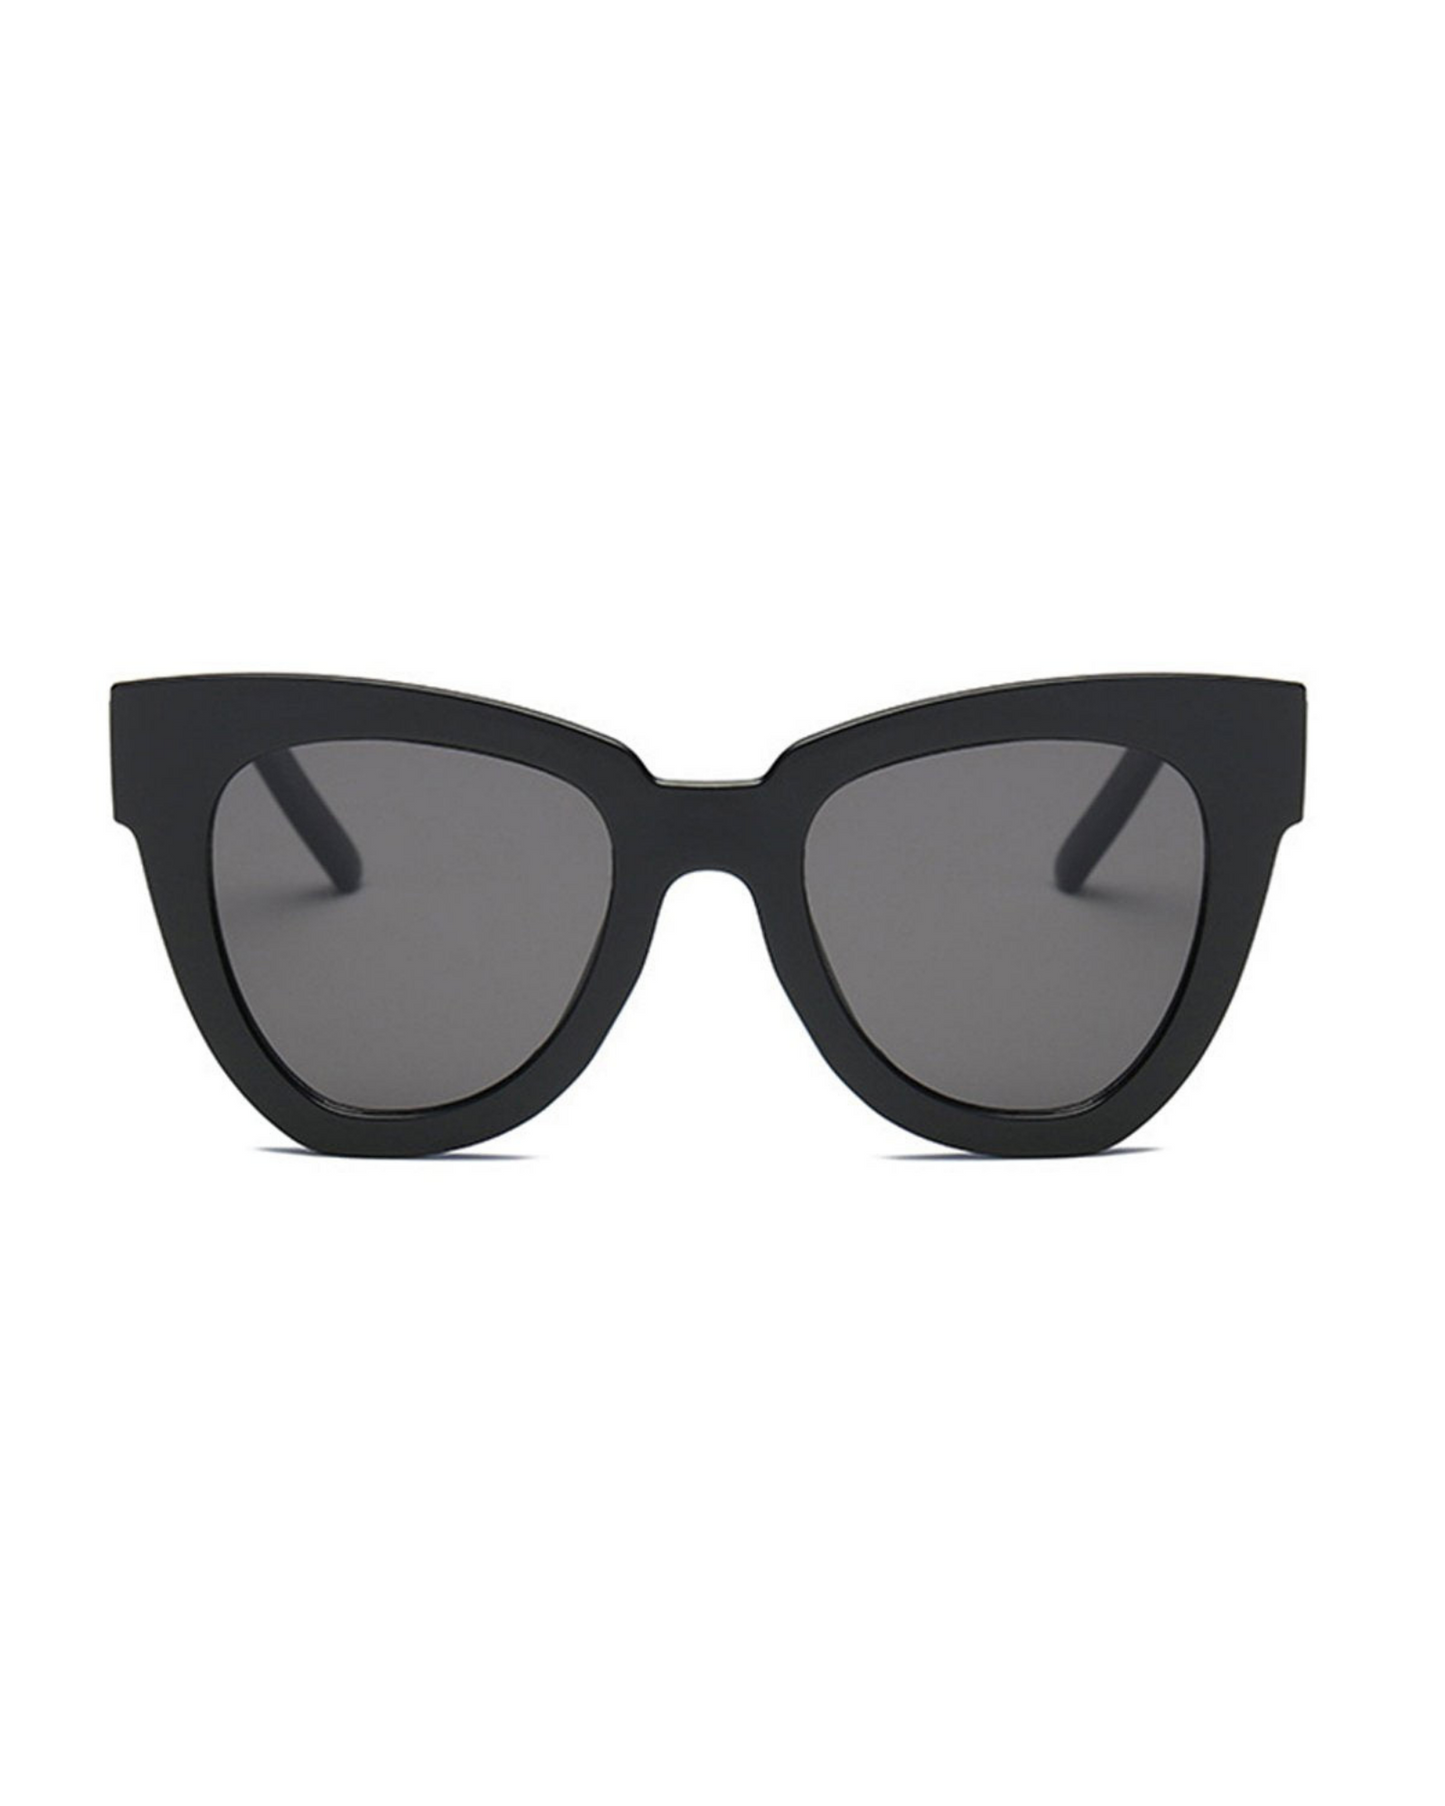 Hayley Sunglasses - The Details Boutique